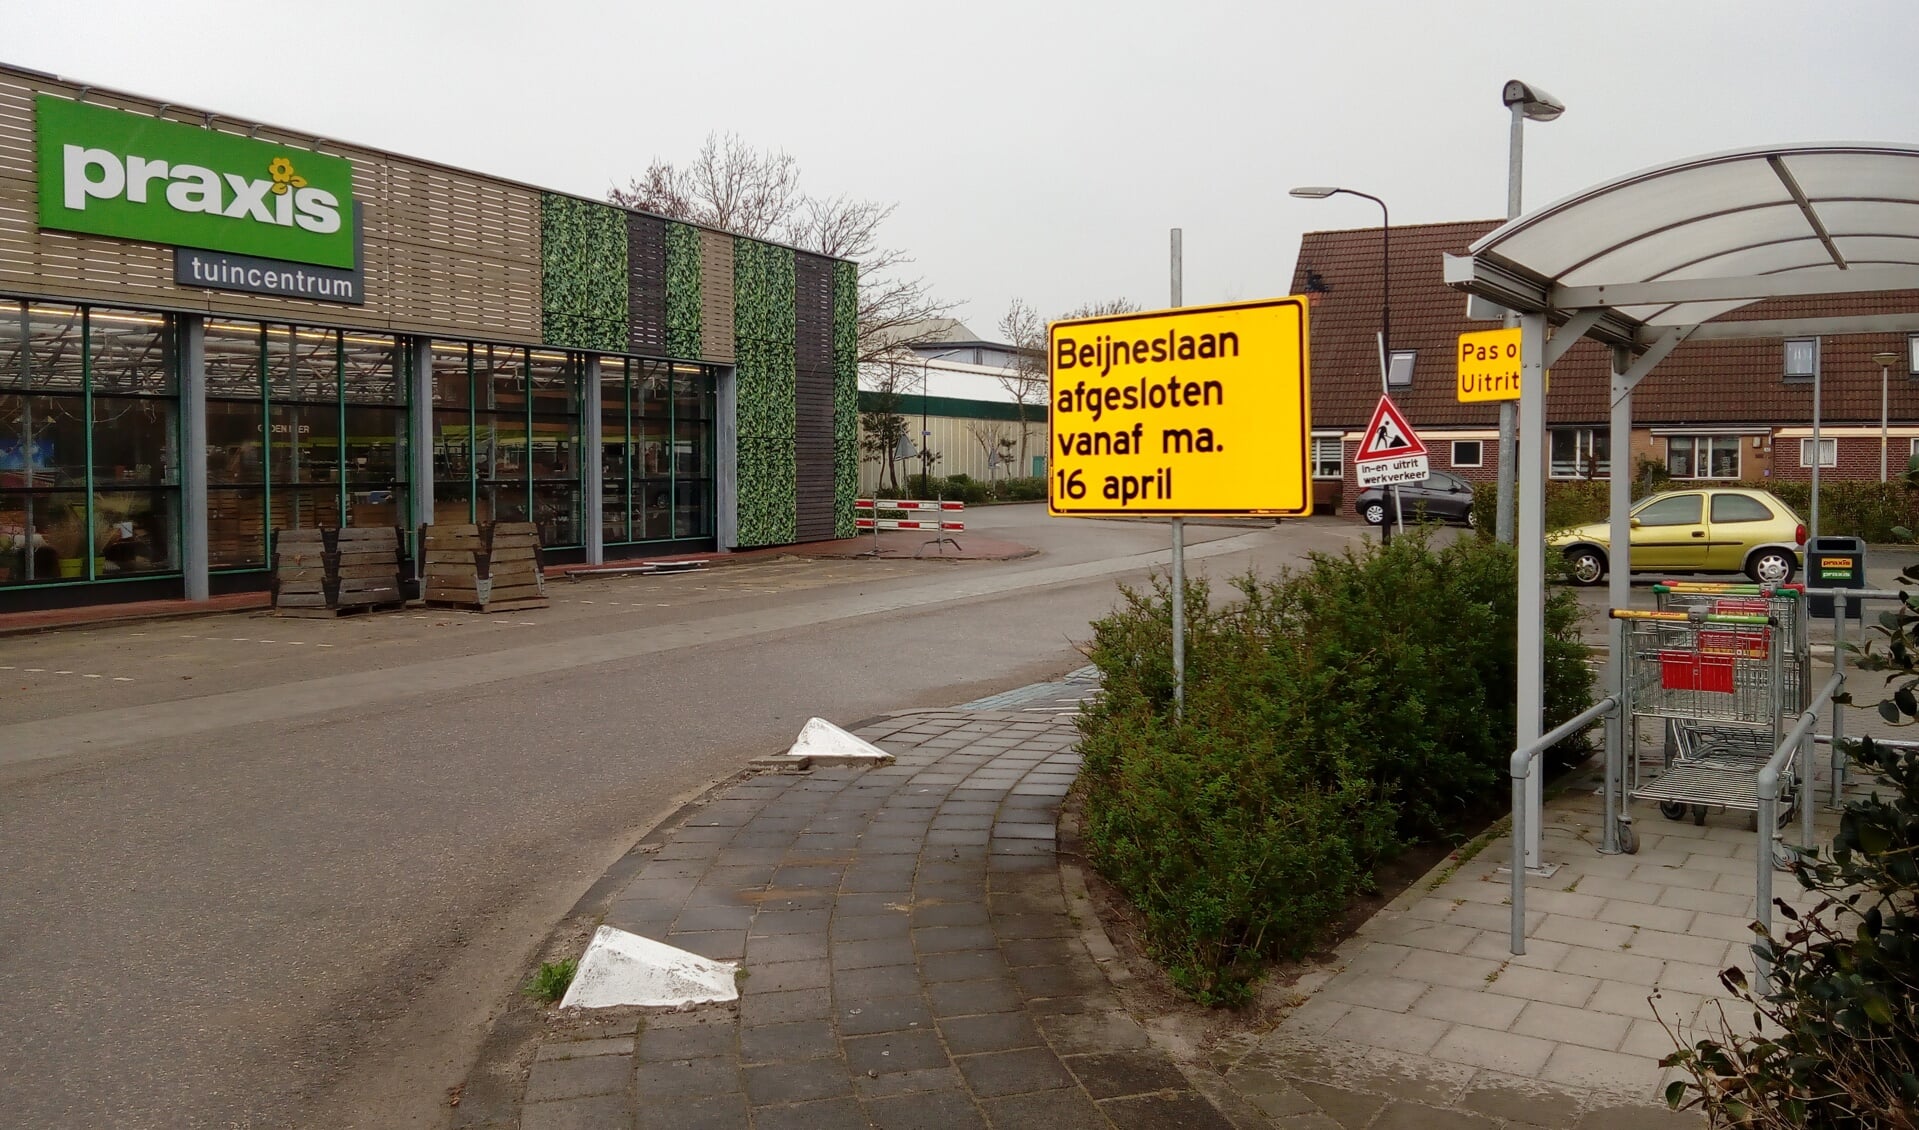 De Beijneslaan in Beverwijk. (Foto: Bos Media Services)